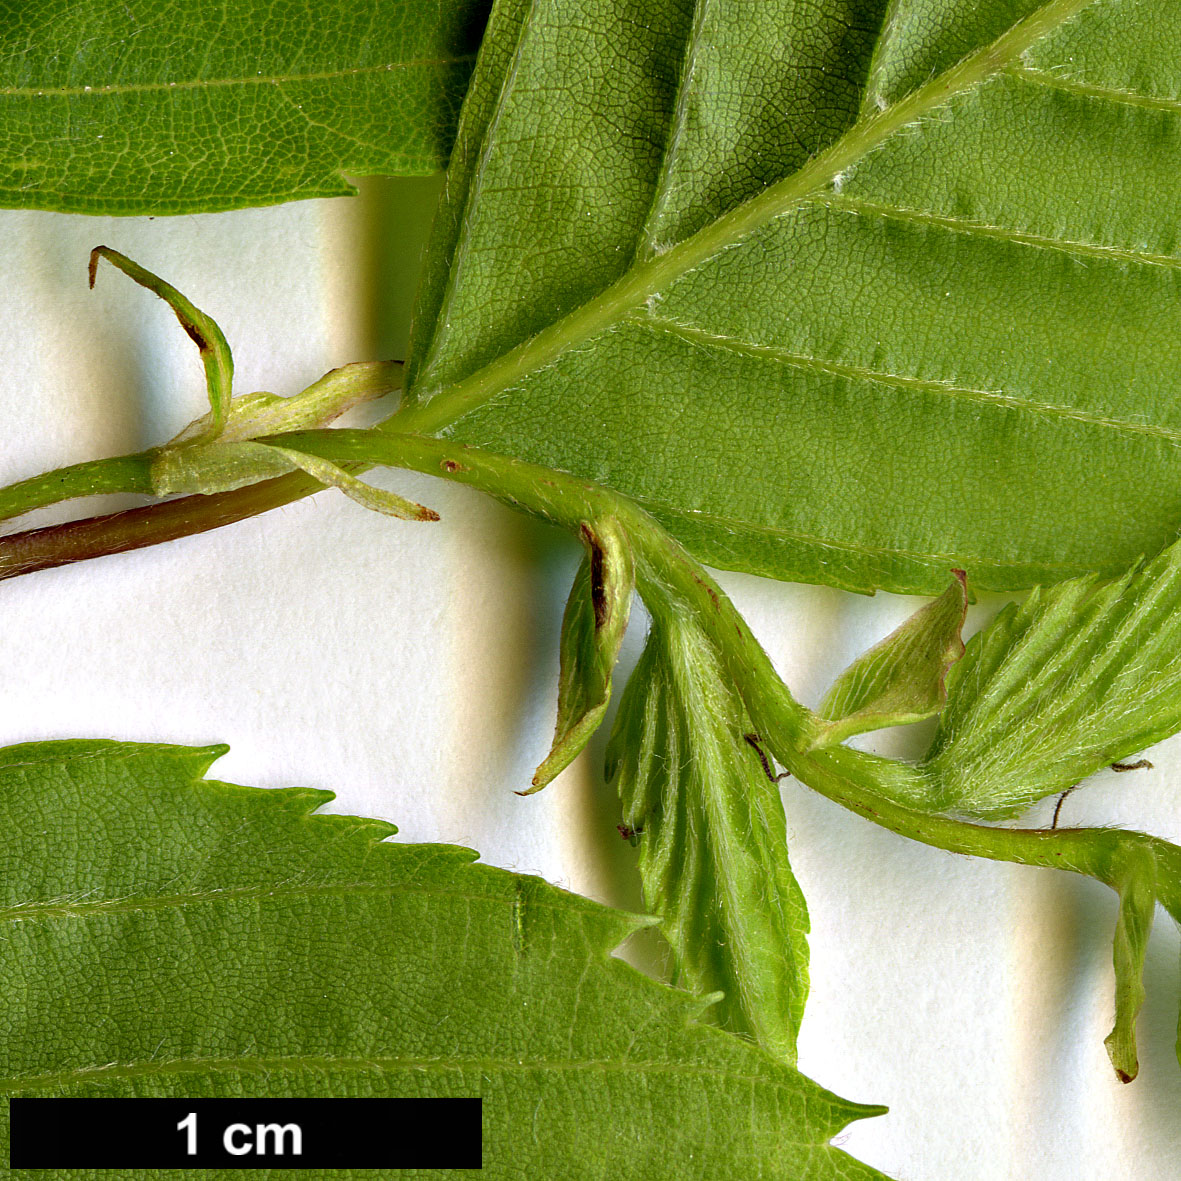 High resolution image: Family: Betulaceae - Genus: Carpinus - Taxon: monbeigiana